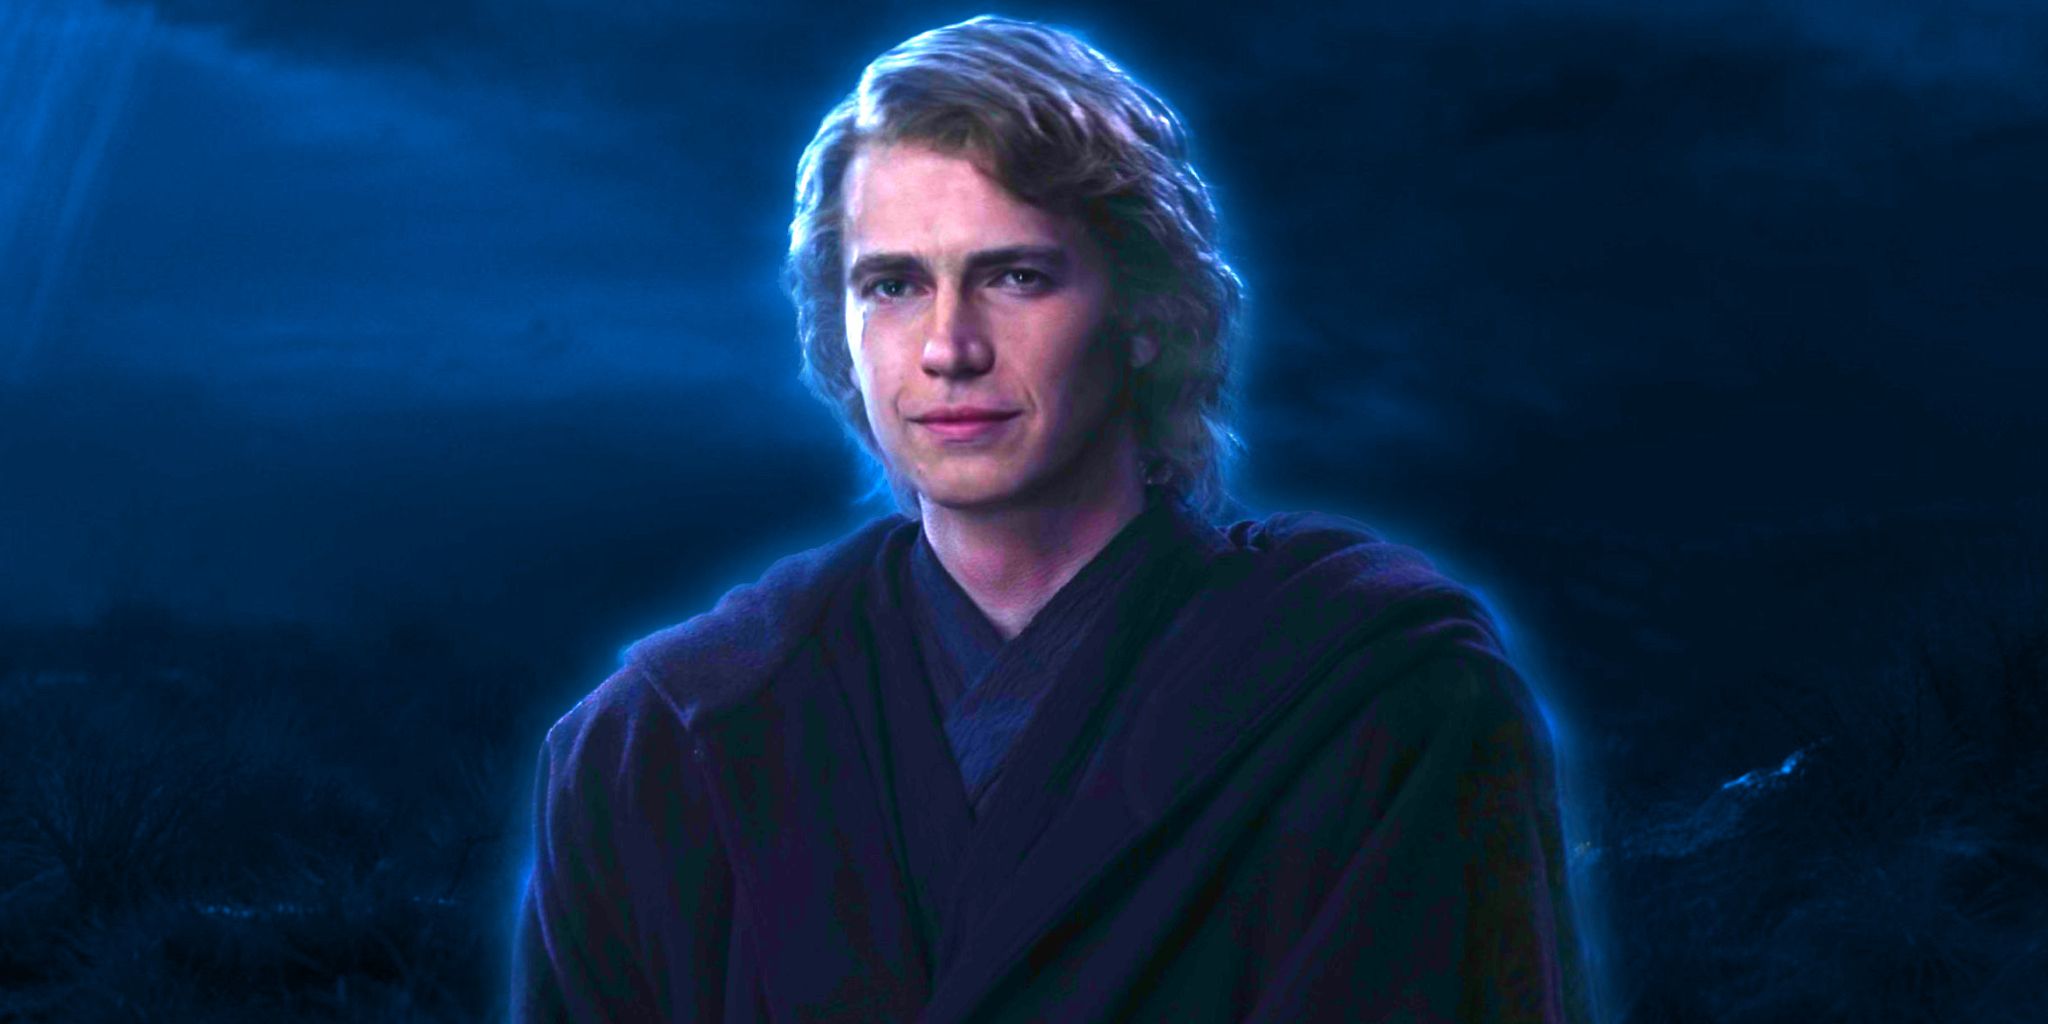 La nueva figura de acción de Anakin Skywalker Hot Toys es la mejor imagen de Hayden Christensen que hemos visto jamás